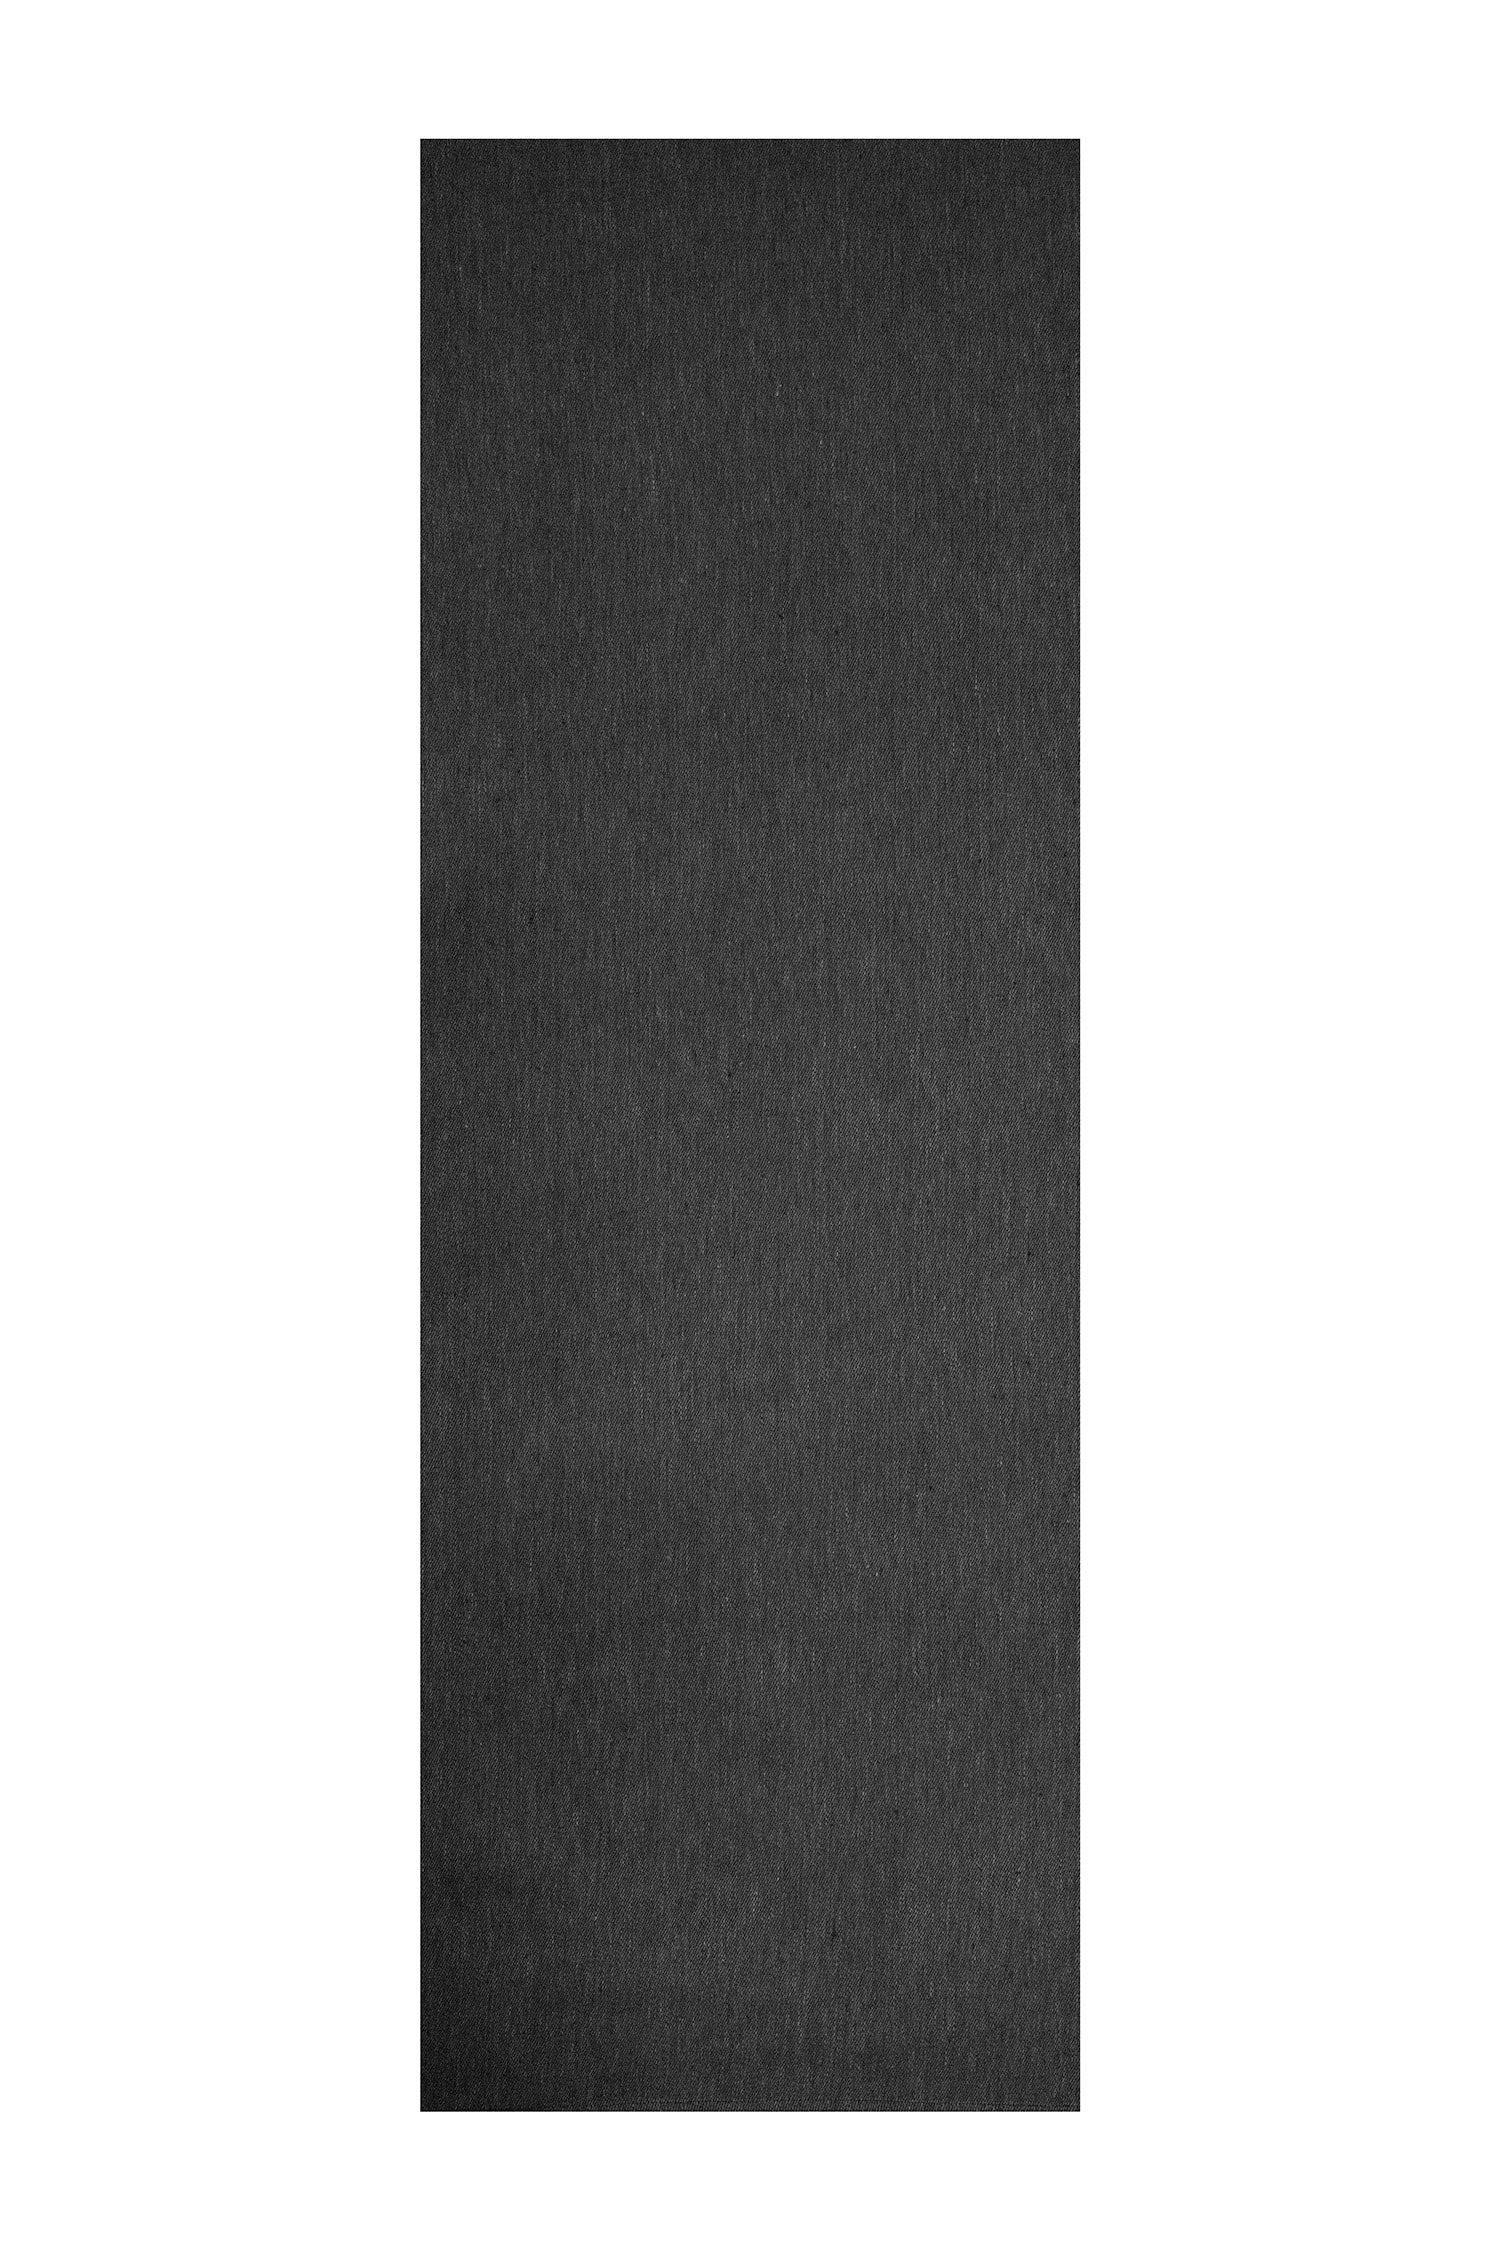 Koivu pellavakaita/laudeliina 52x153cm Black